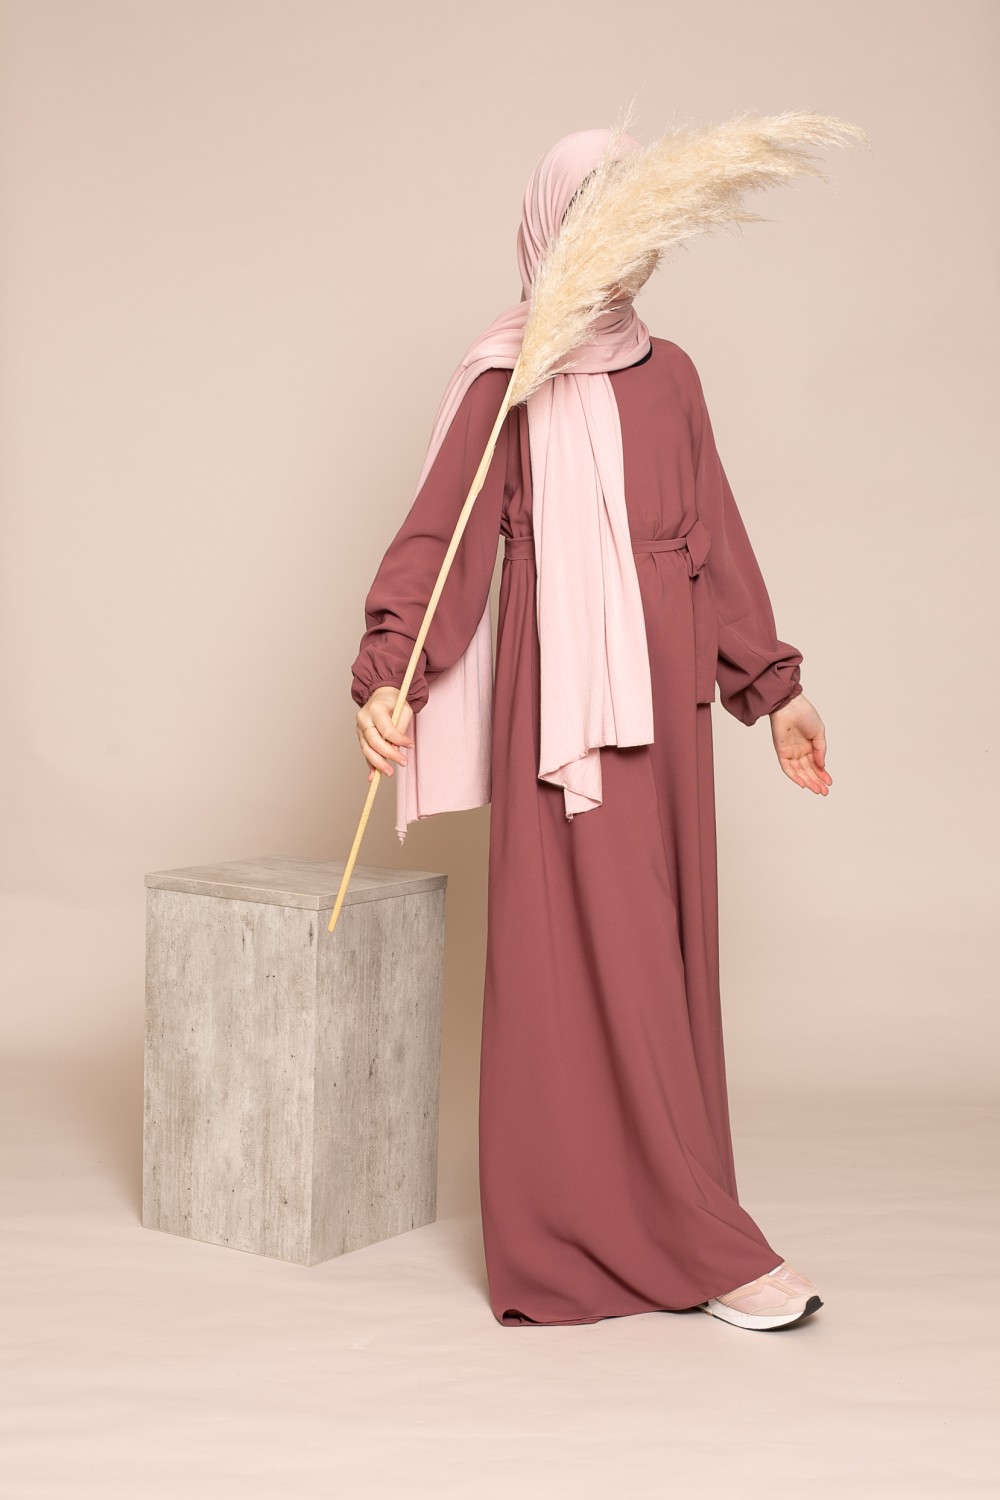 Robe en soie de Médine pour les moins de 1m60 jeune fille musulmane